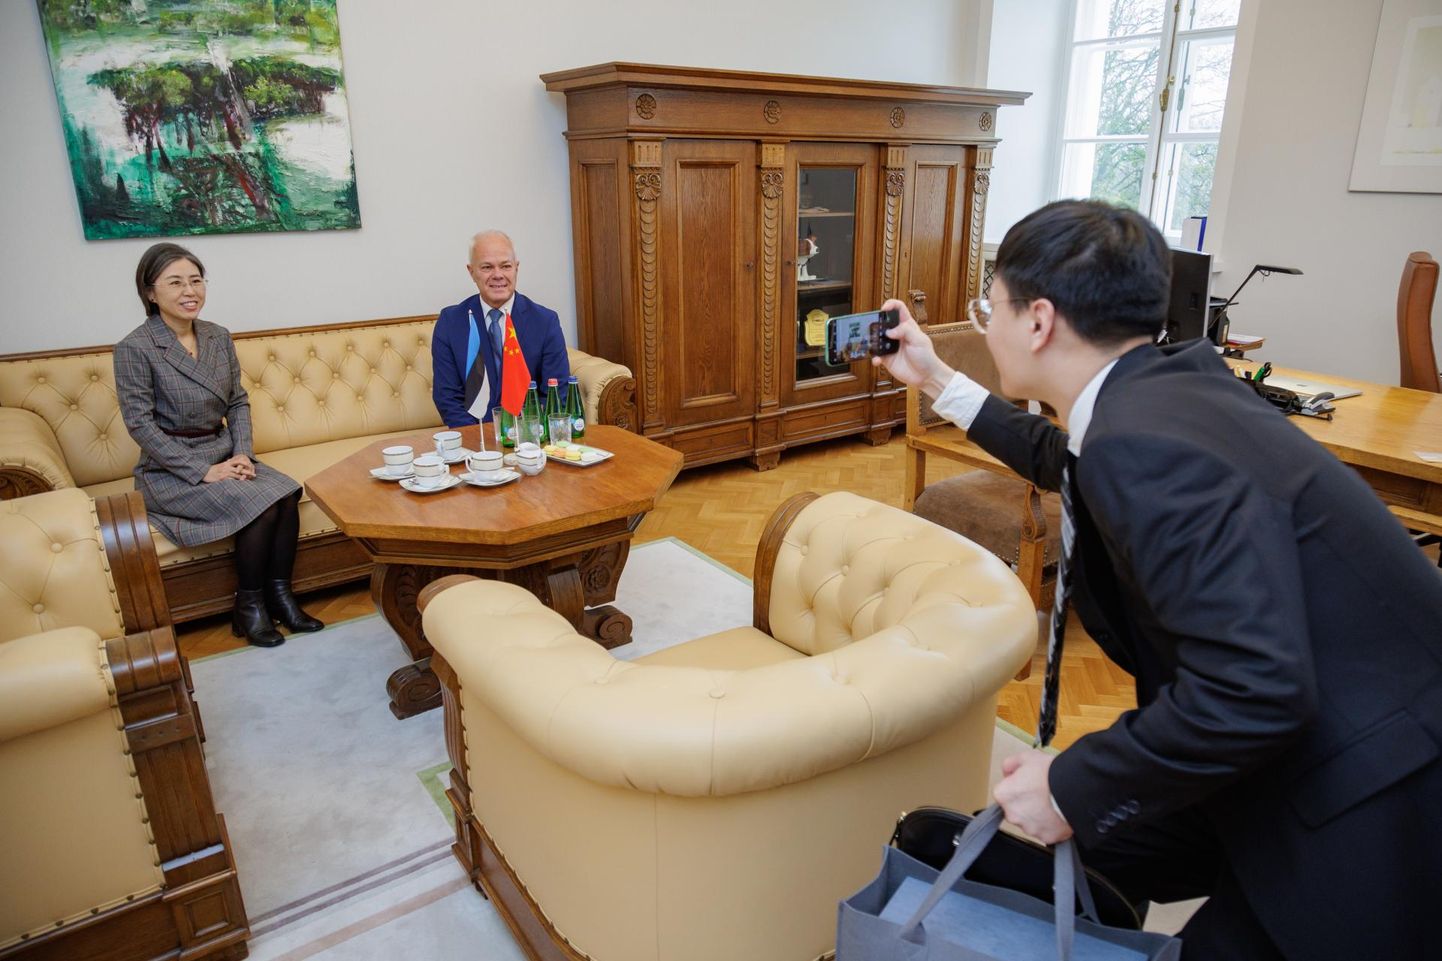 Hiina suursaadik Guo Xiaomei hoiatas Eesti-Hiina parlamendirühma esimeest Toomas Kivimäge, et Taipei esinduse avamine võib tähendada tema lahkumist Eestist.